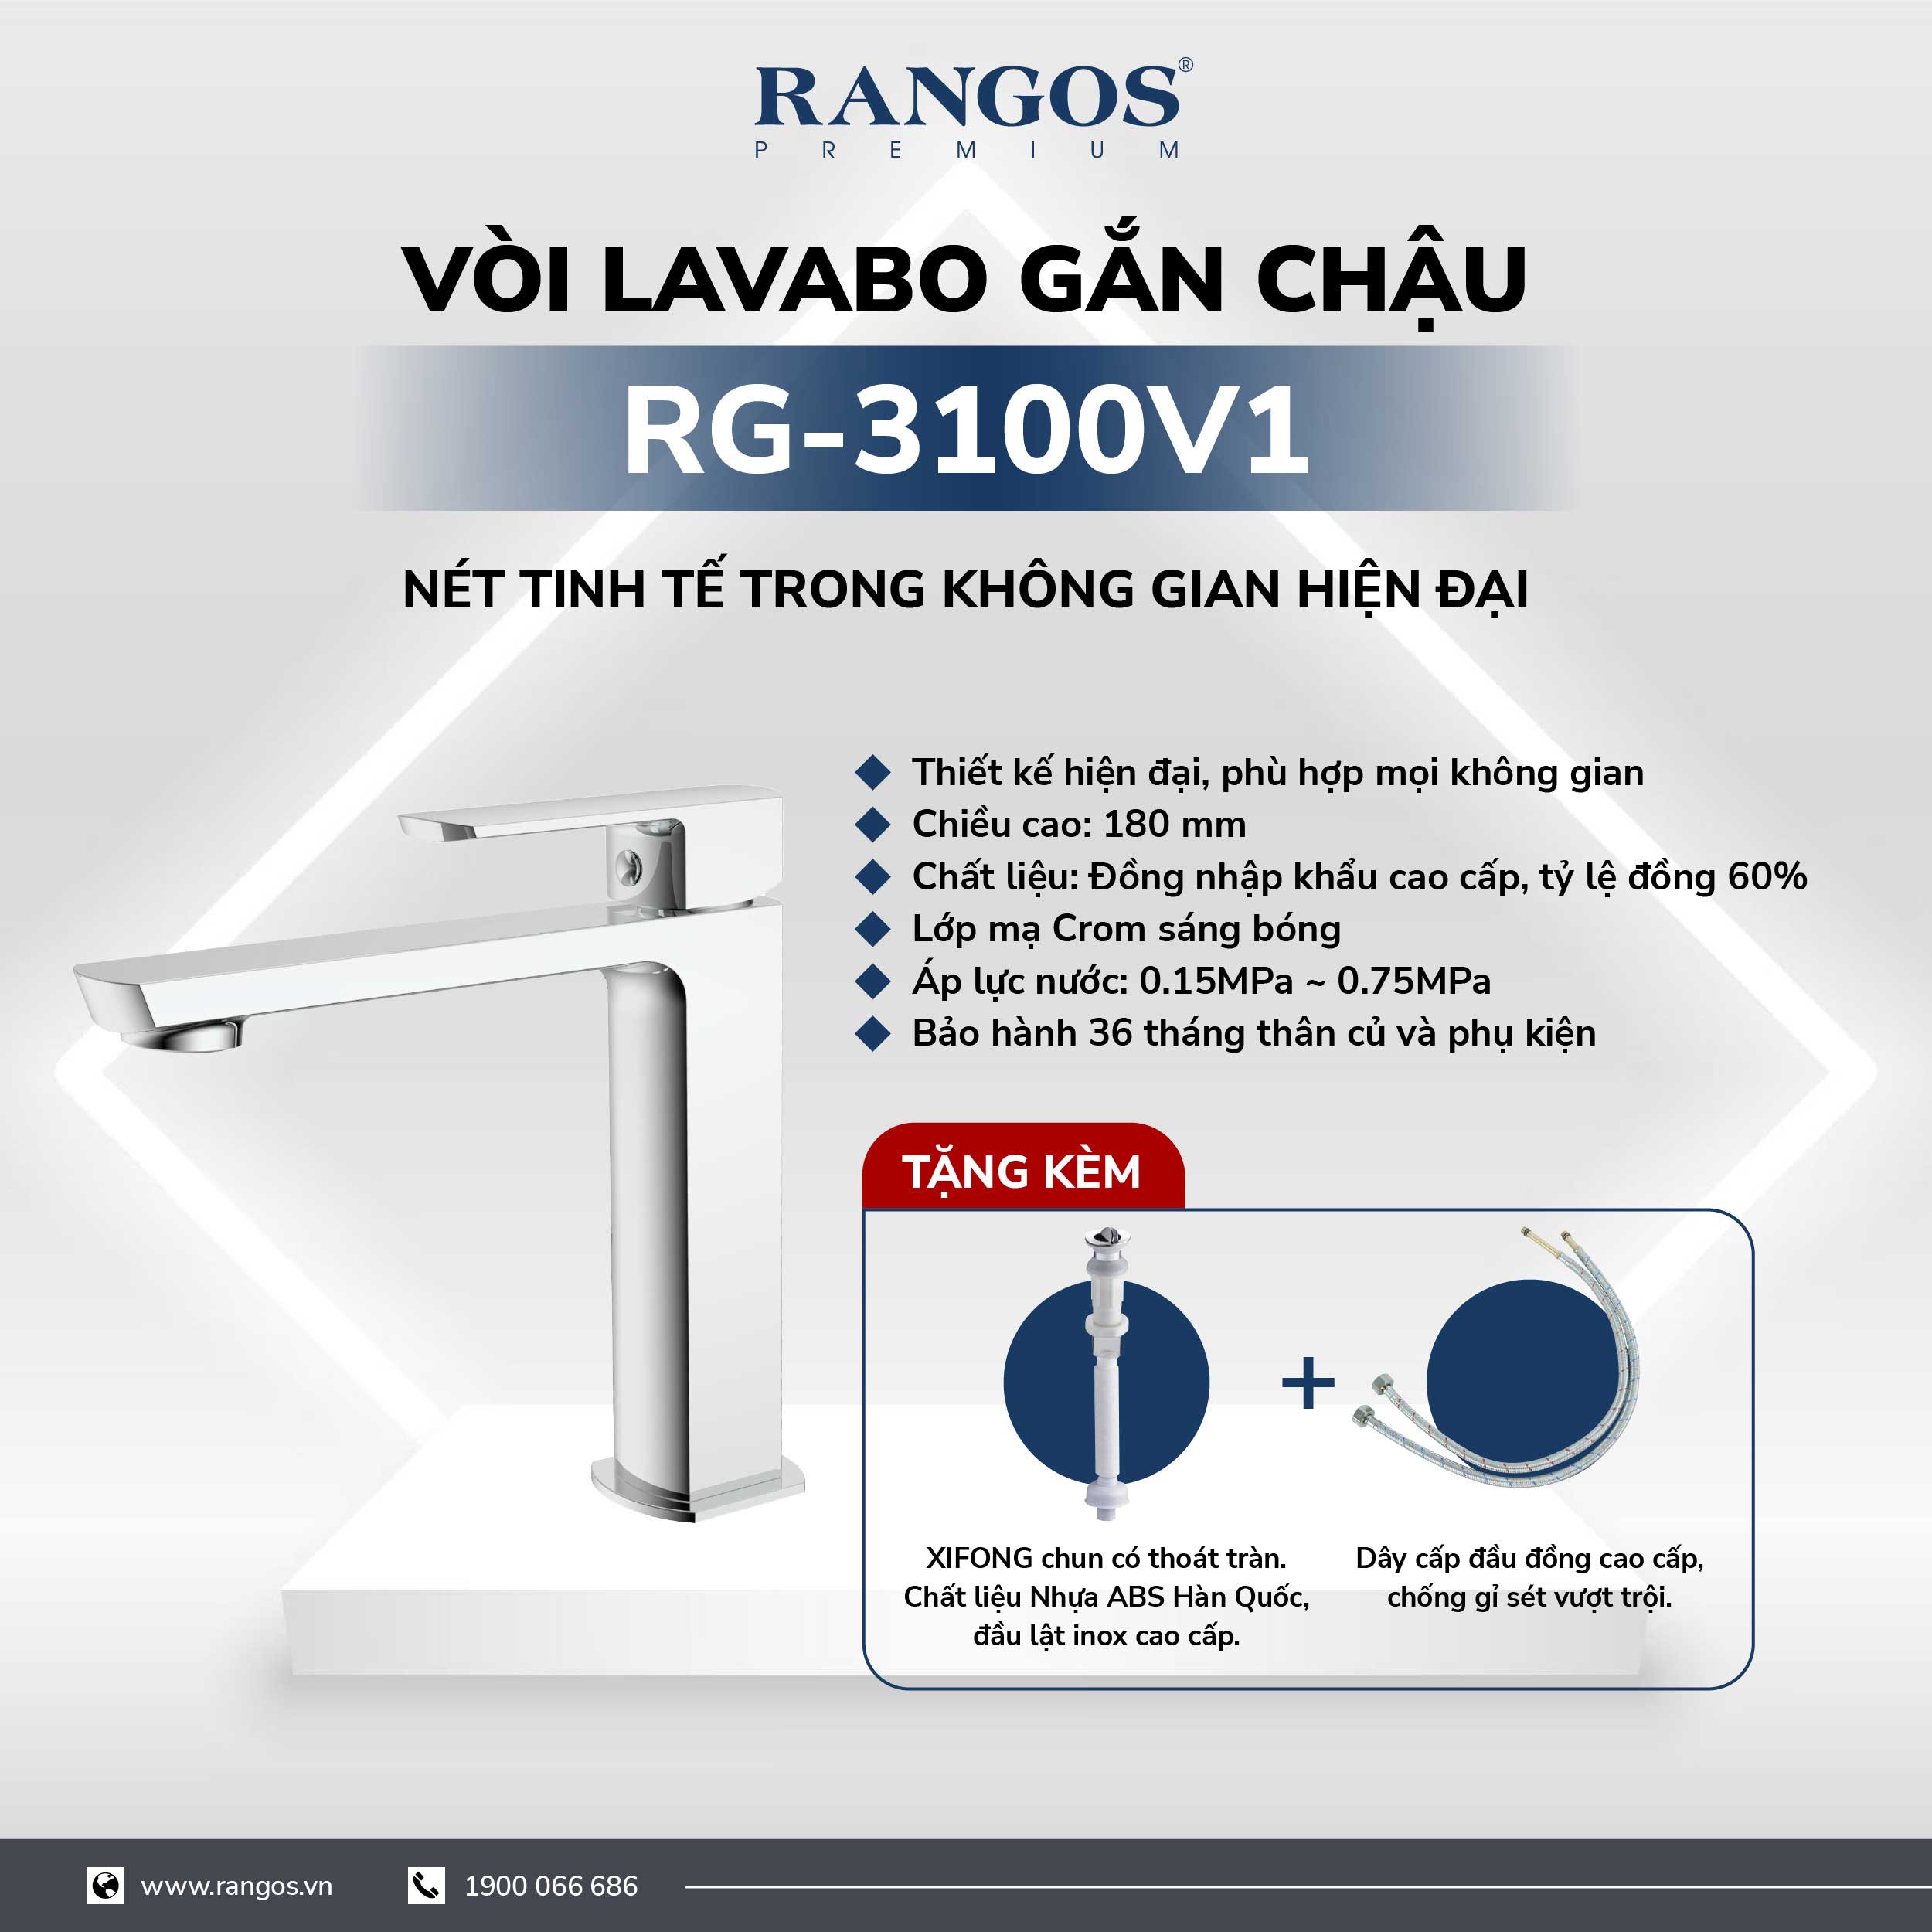 Bộ vòi lavabo gắn chậu Rangos RG-3100V1